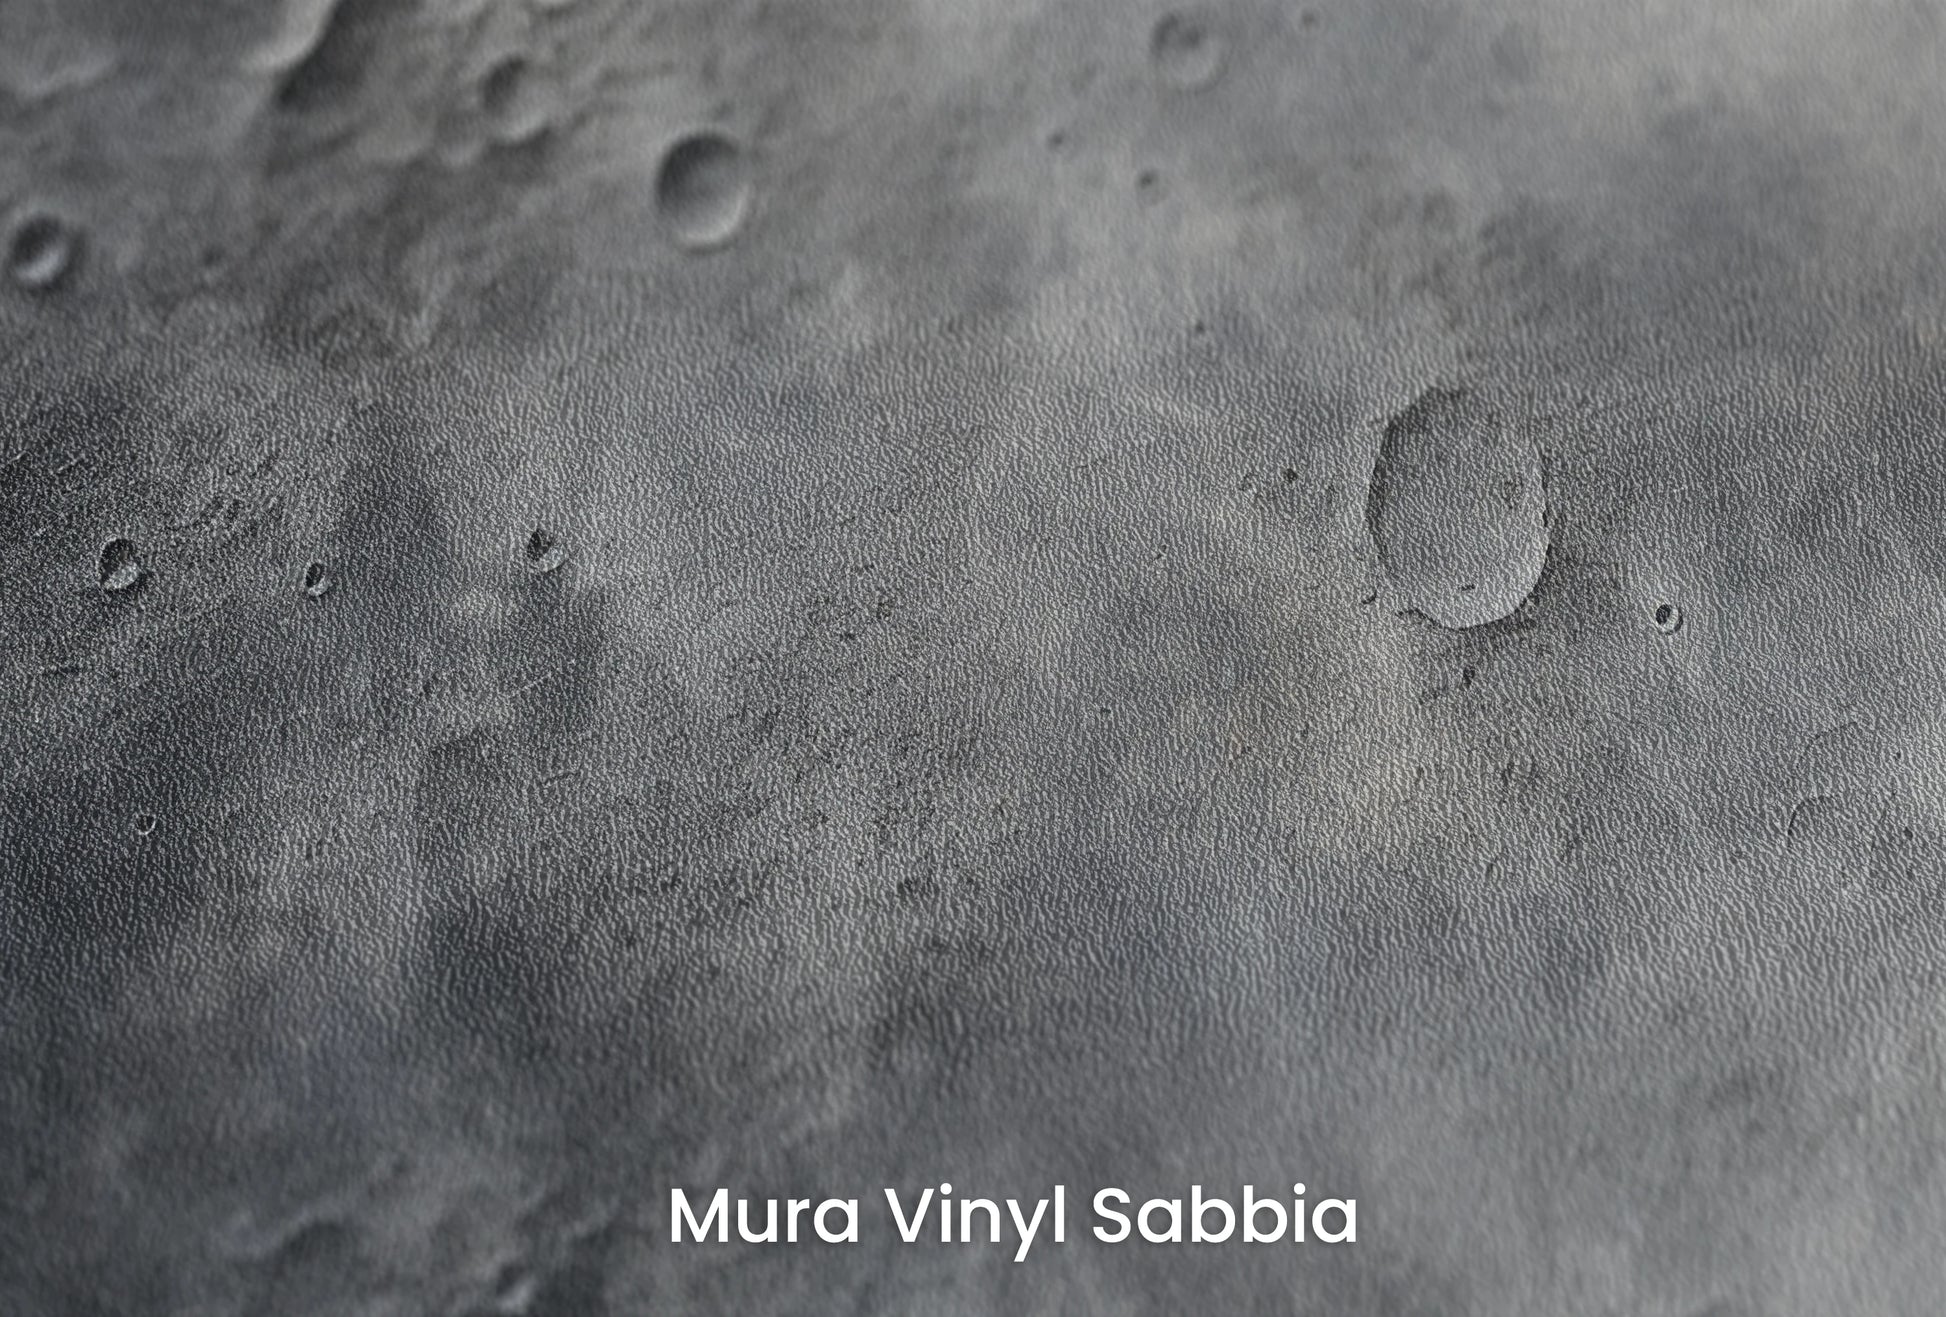 Zbliżenie na artystyczną fototapetę o nazwie Cosmic Dawn na podłożu Mura Vinyl Sabbia struktura grubego ziarna piasku.